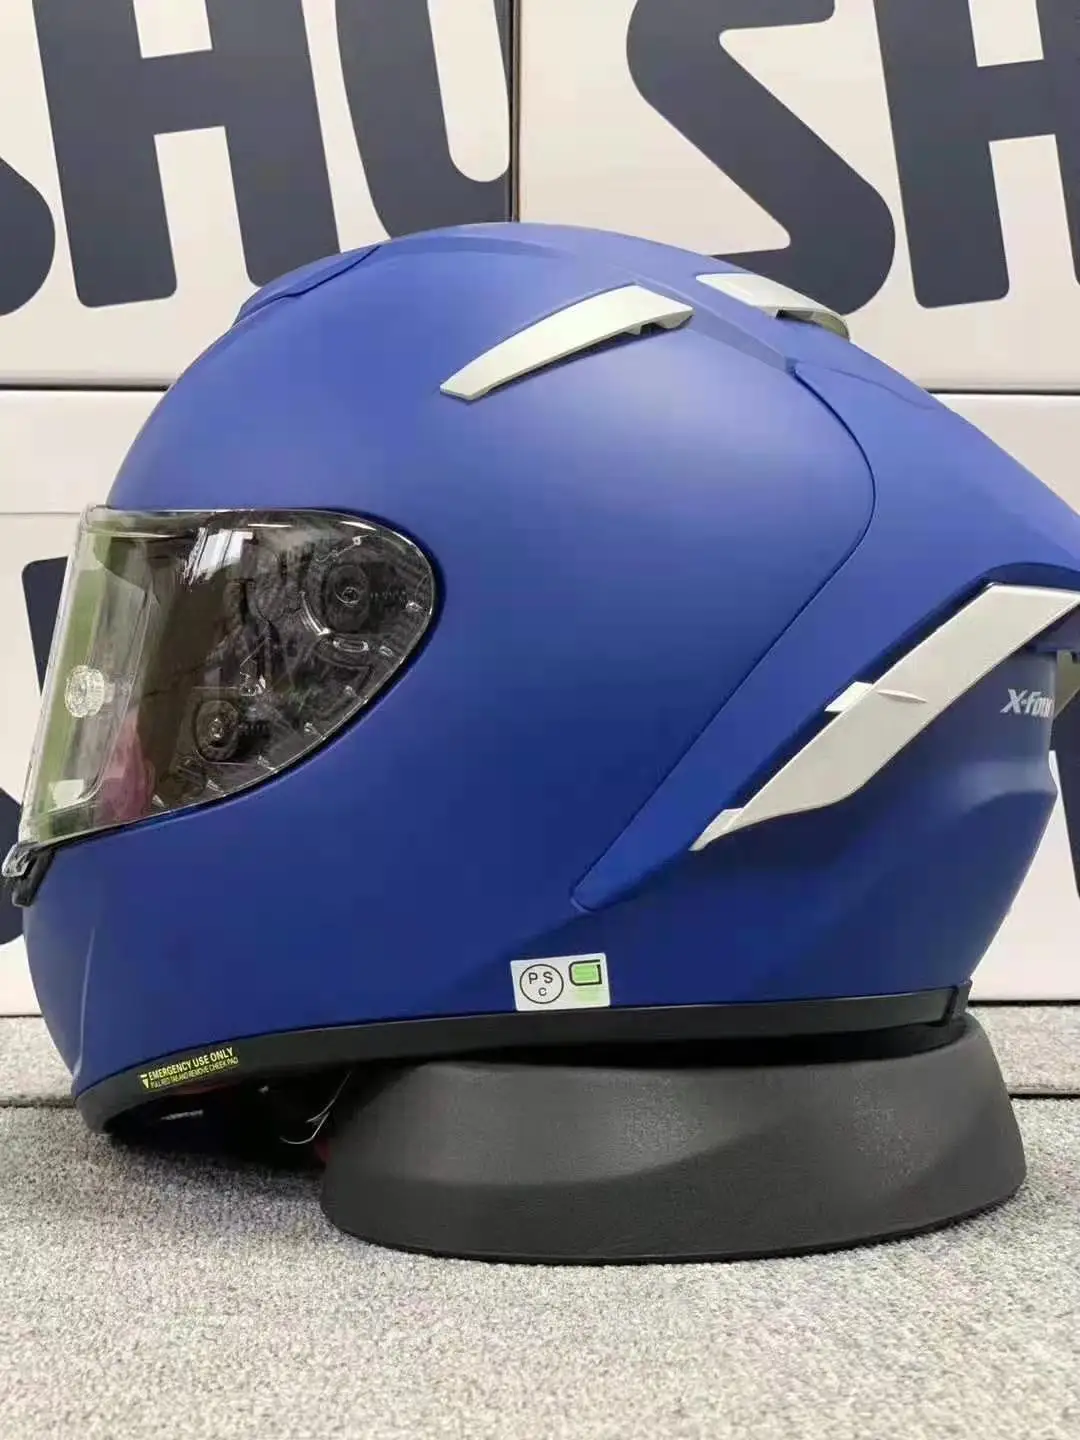 

Мотоциклетный шлем на все лицо X14 93 marquez, матовый синий шлем для езды на мотоцикле, гоночный мотоциклетный шлем